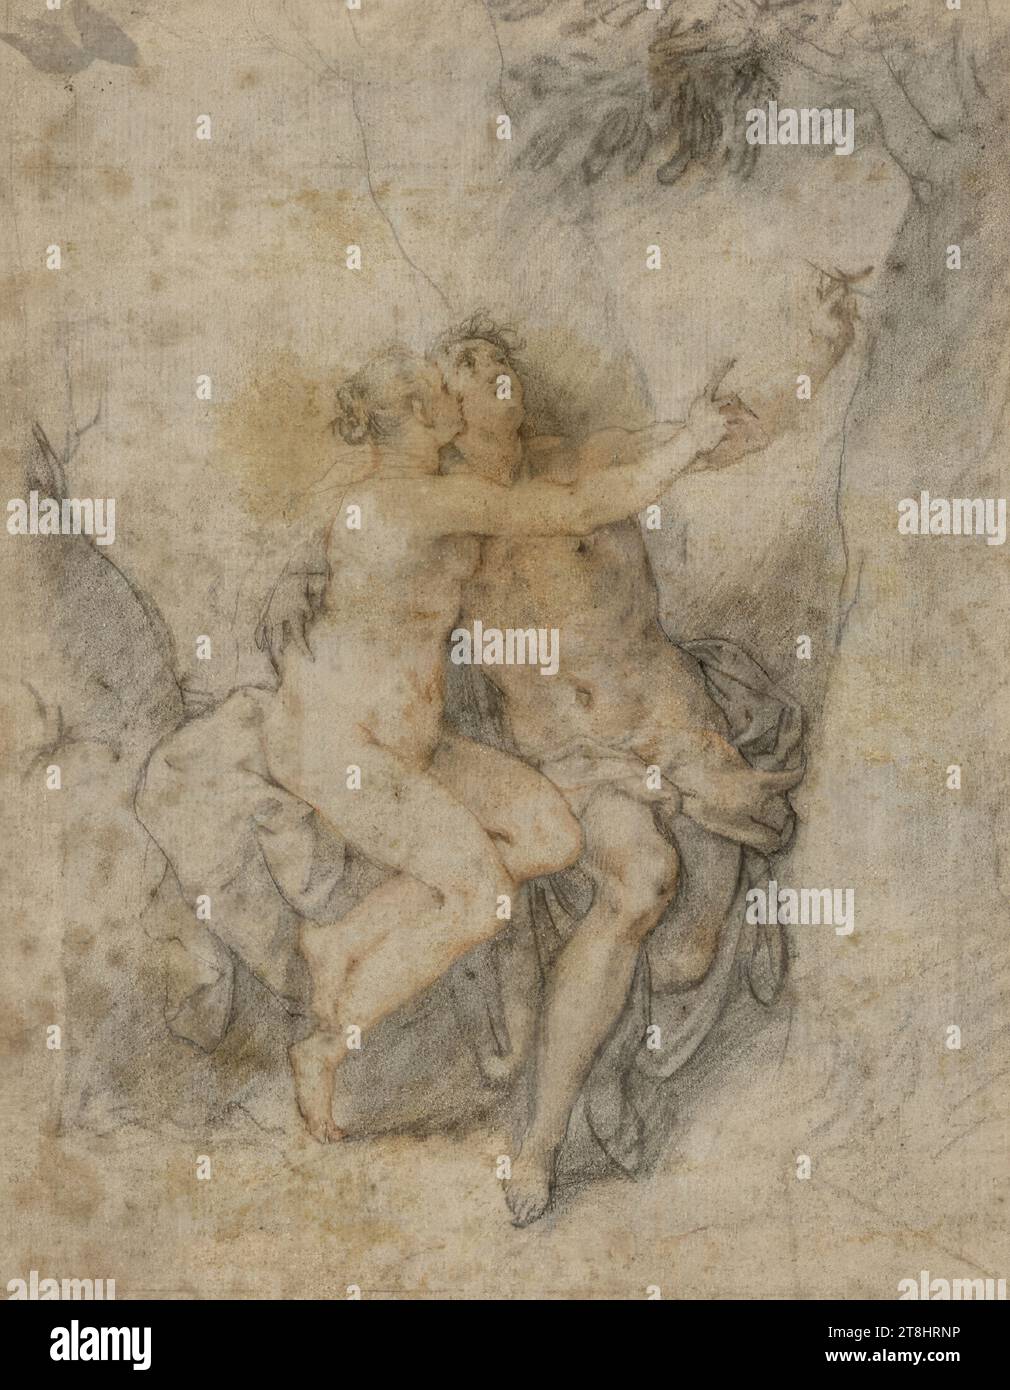 Medor und Angelica, Zeichnung, rote Kreide und schwarze Kreide, 16,5 x 12,9 cm, keine Sammlermarke Herzog Albert von Sachsen-Teschen Stockfoto